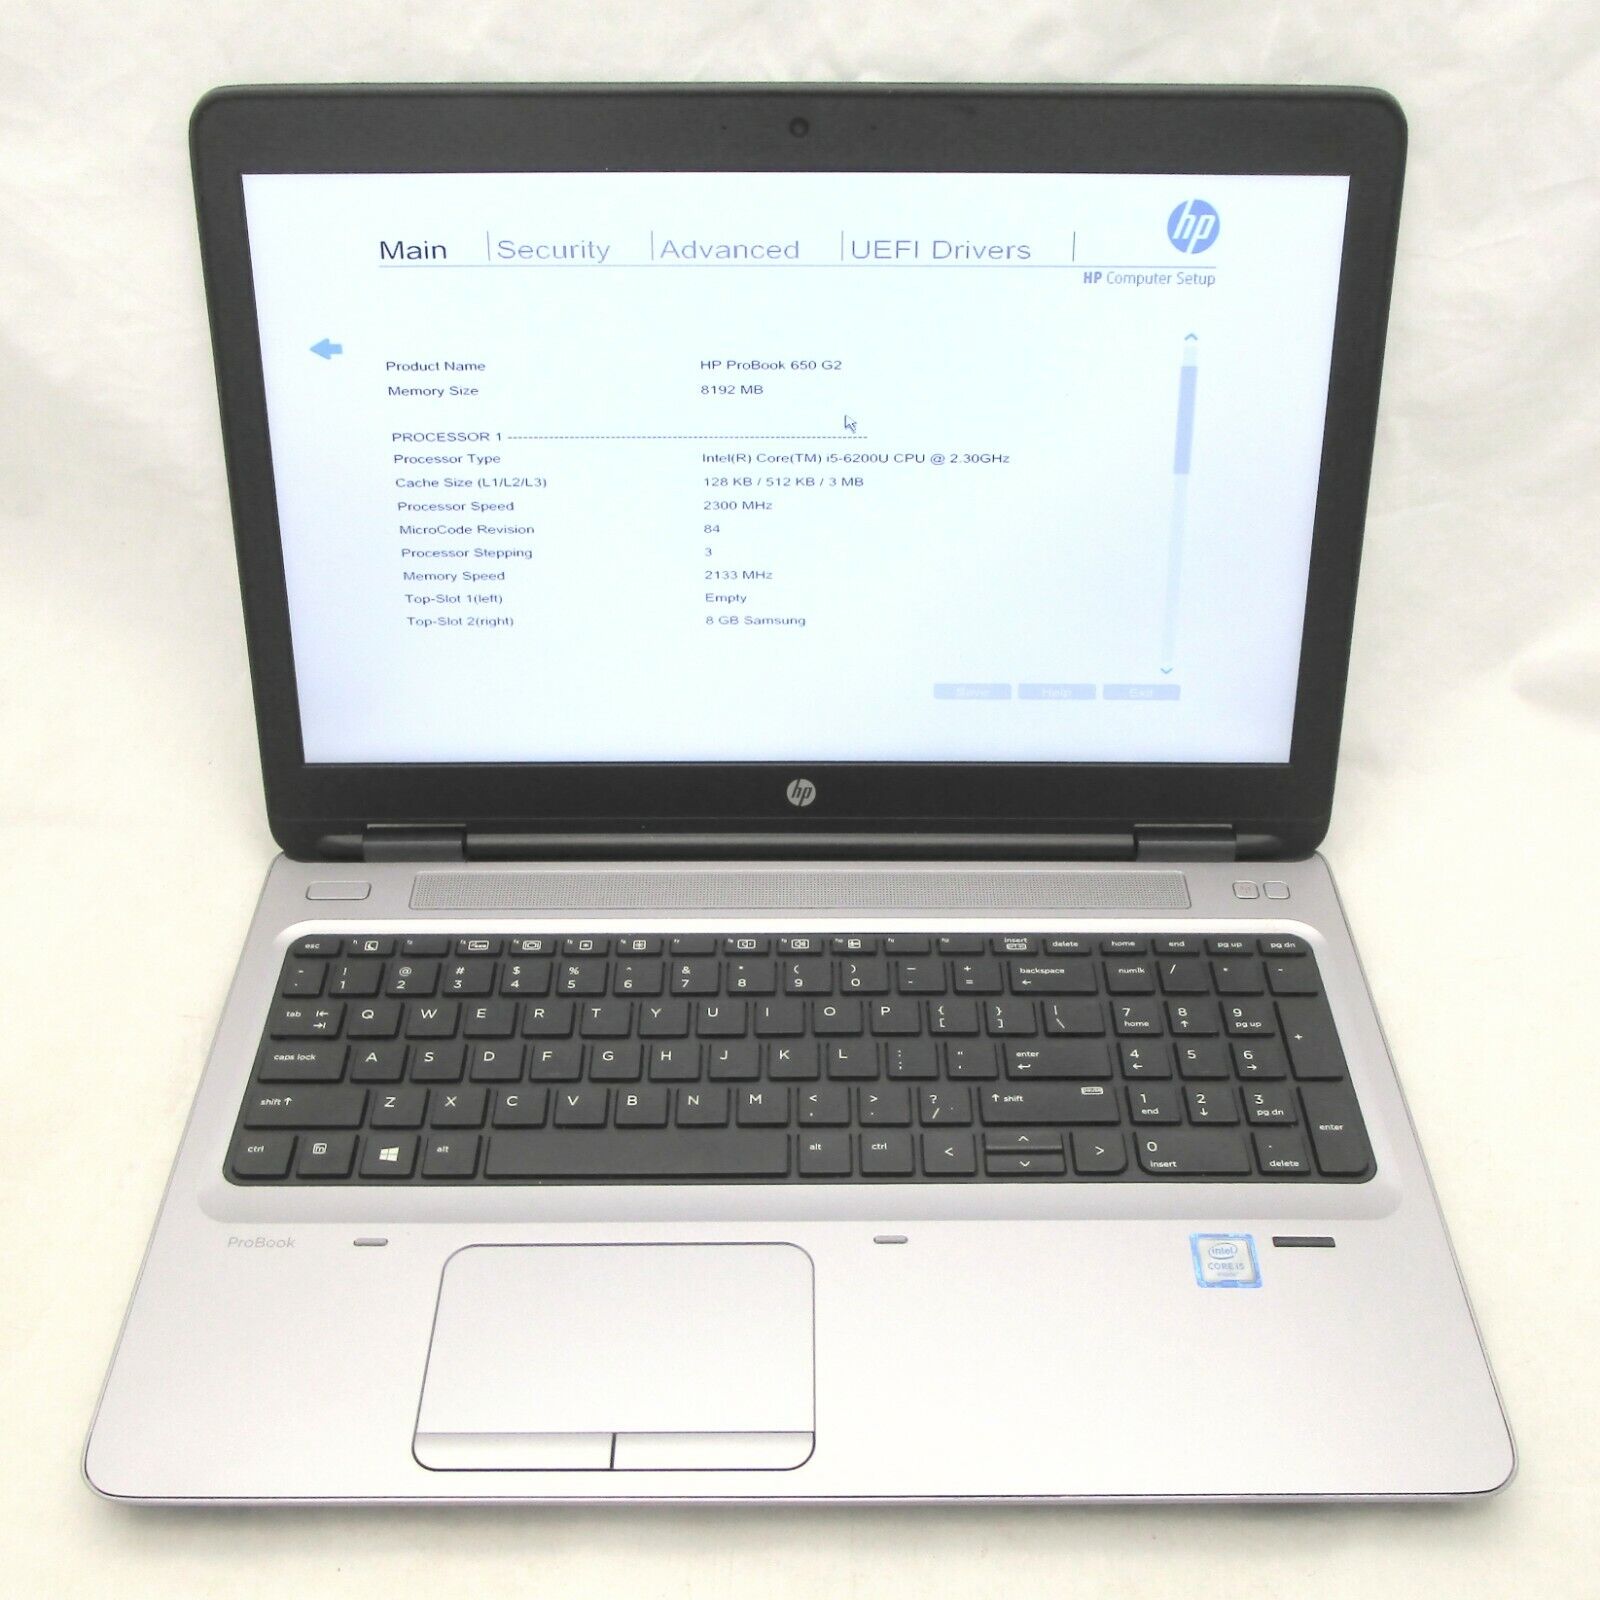 HP ProBook 650 G2 - Intel Core i5-6200U 2.3GHz, 8GB DDR4, 500GB HDD, No OS/AC